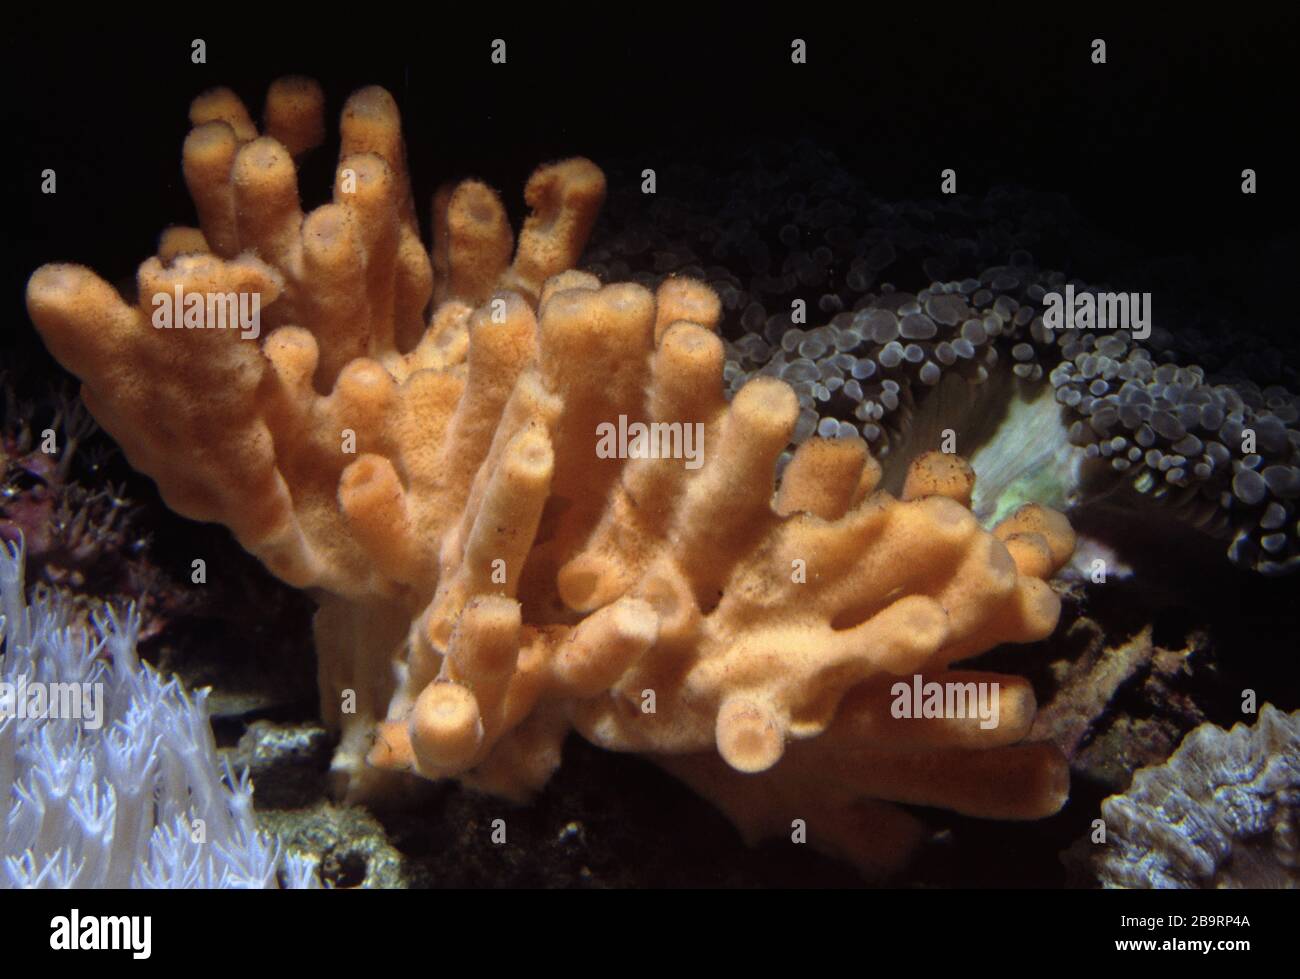 Indo-pacific stalagmite sponge, Auletta sp. Stock Photo